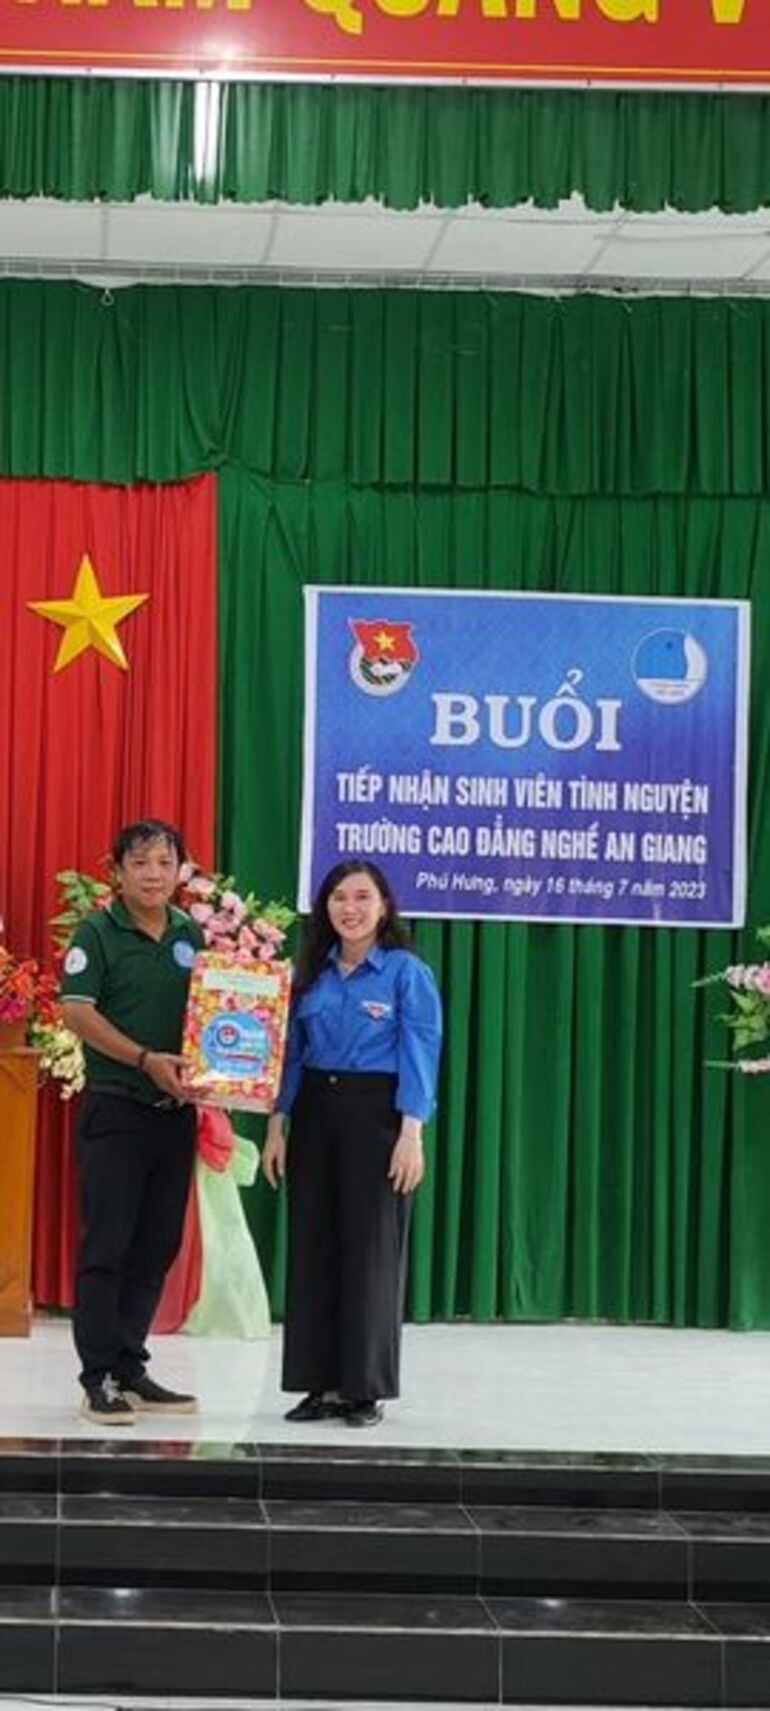 Phú Hưng tiếp nhận sinh viên tình nguyện Trường Cao Đẳng Nghề An Giang